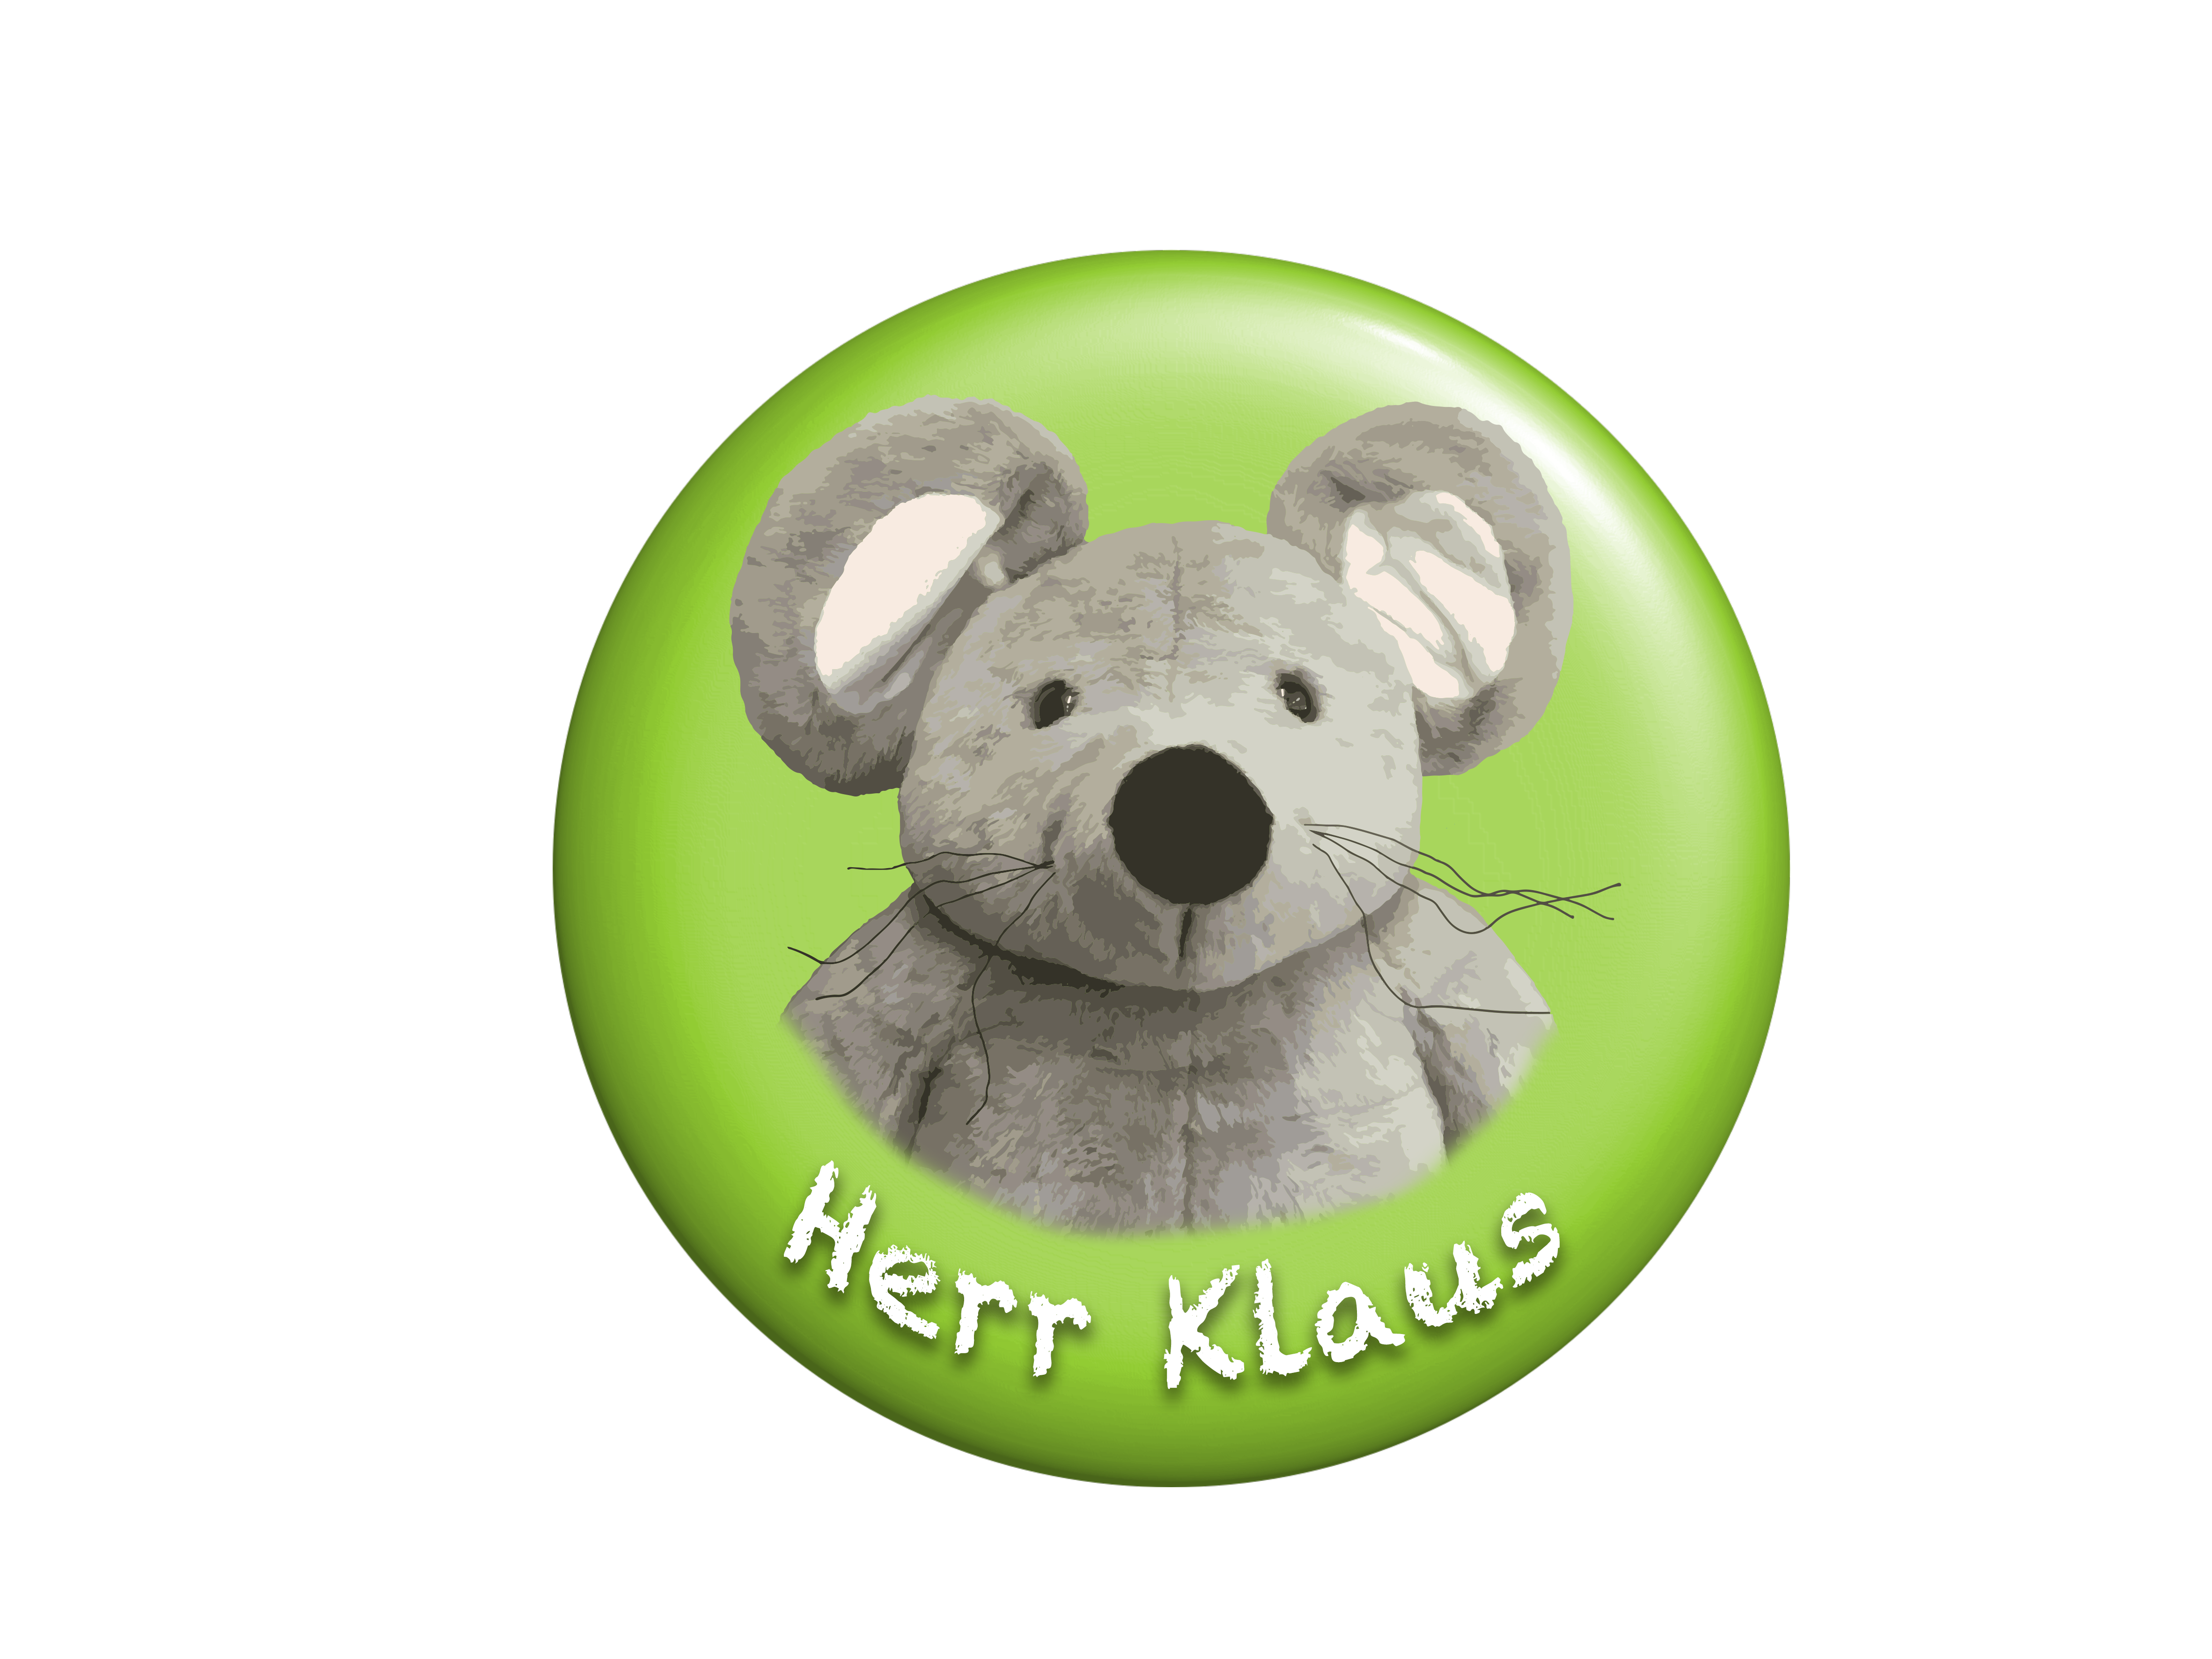 forver Maus, forever Herr Klaus.